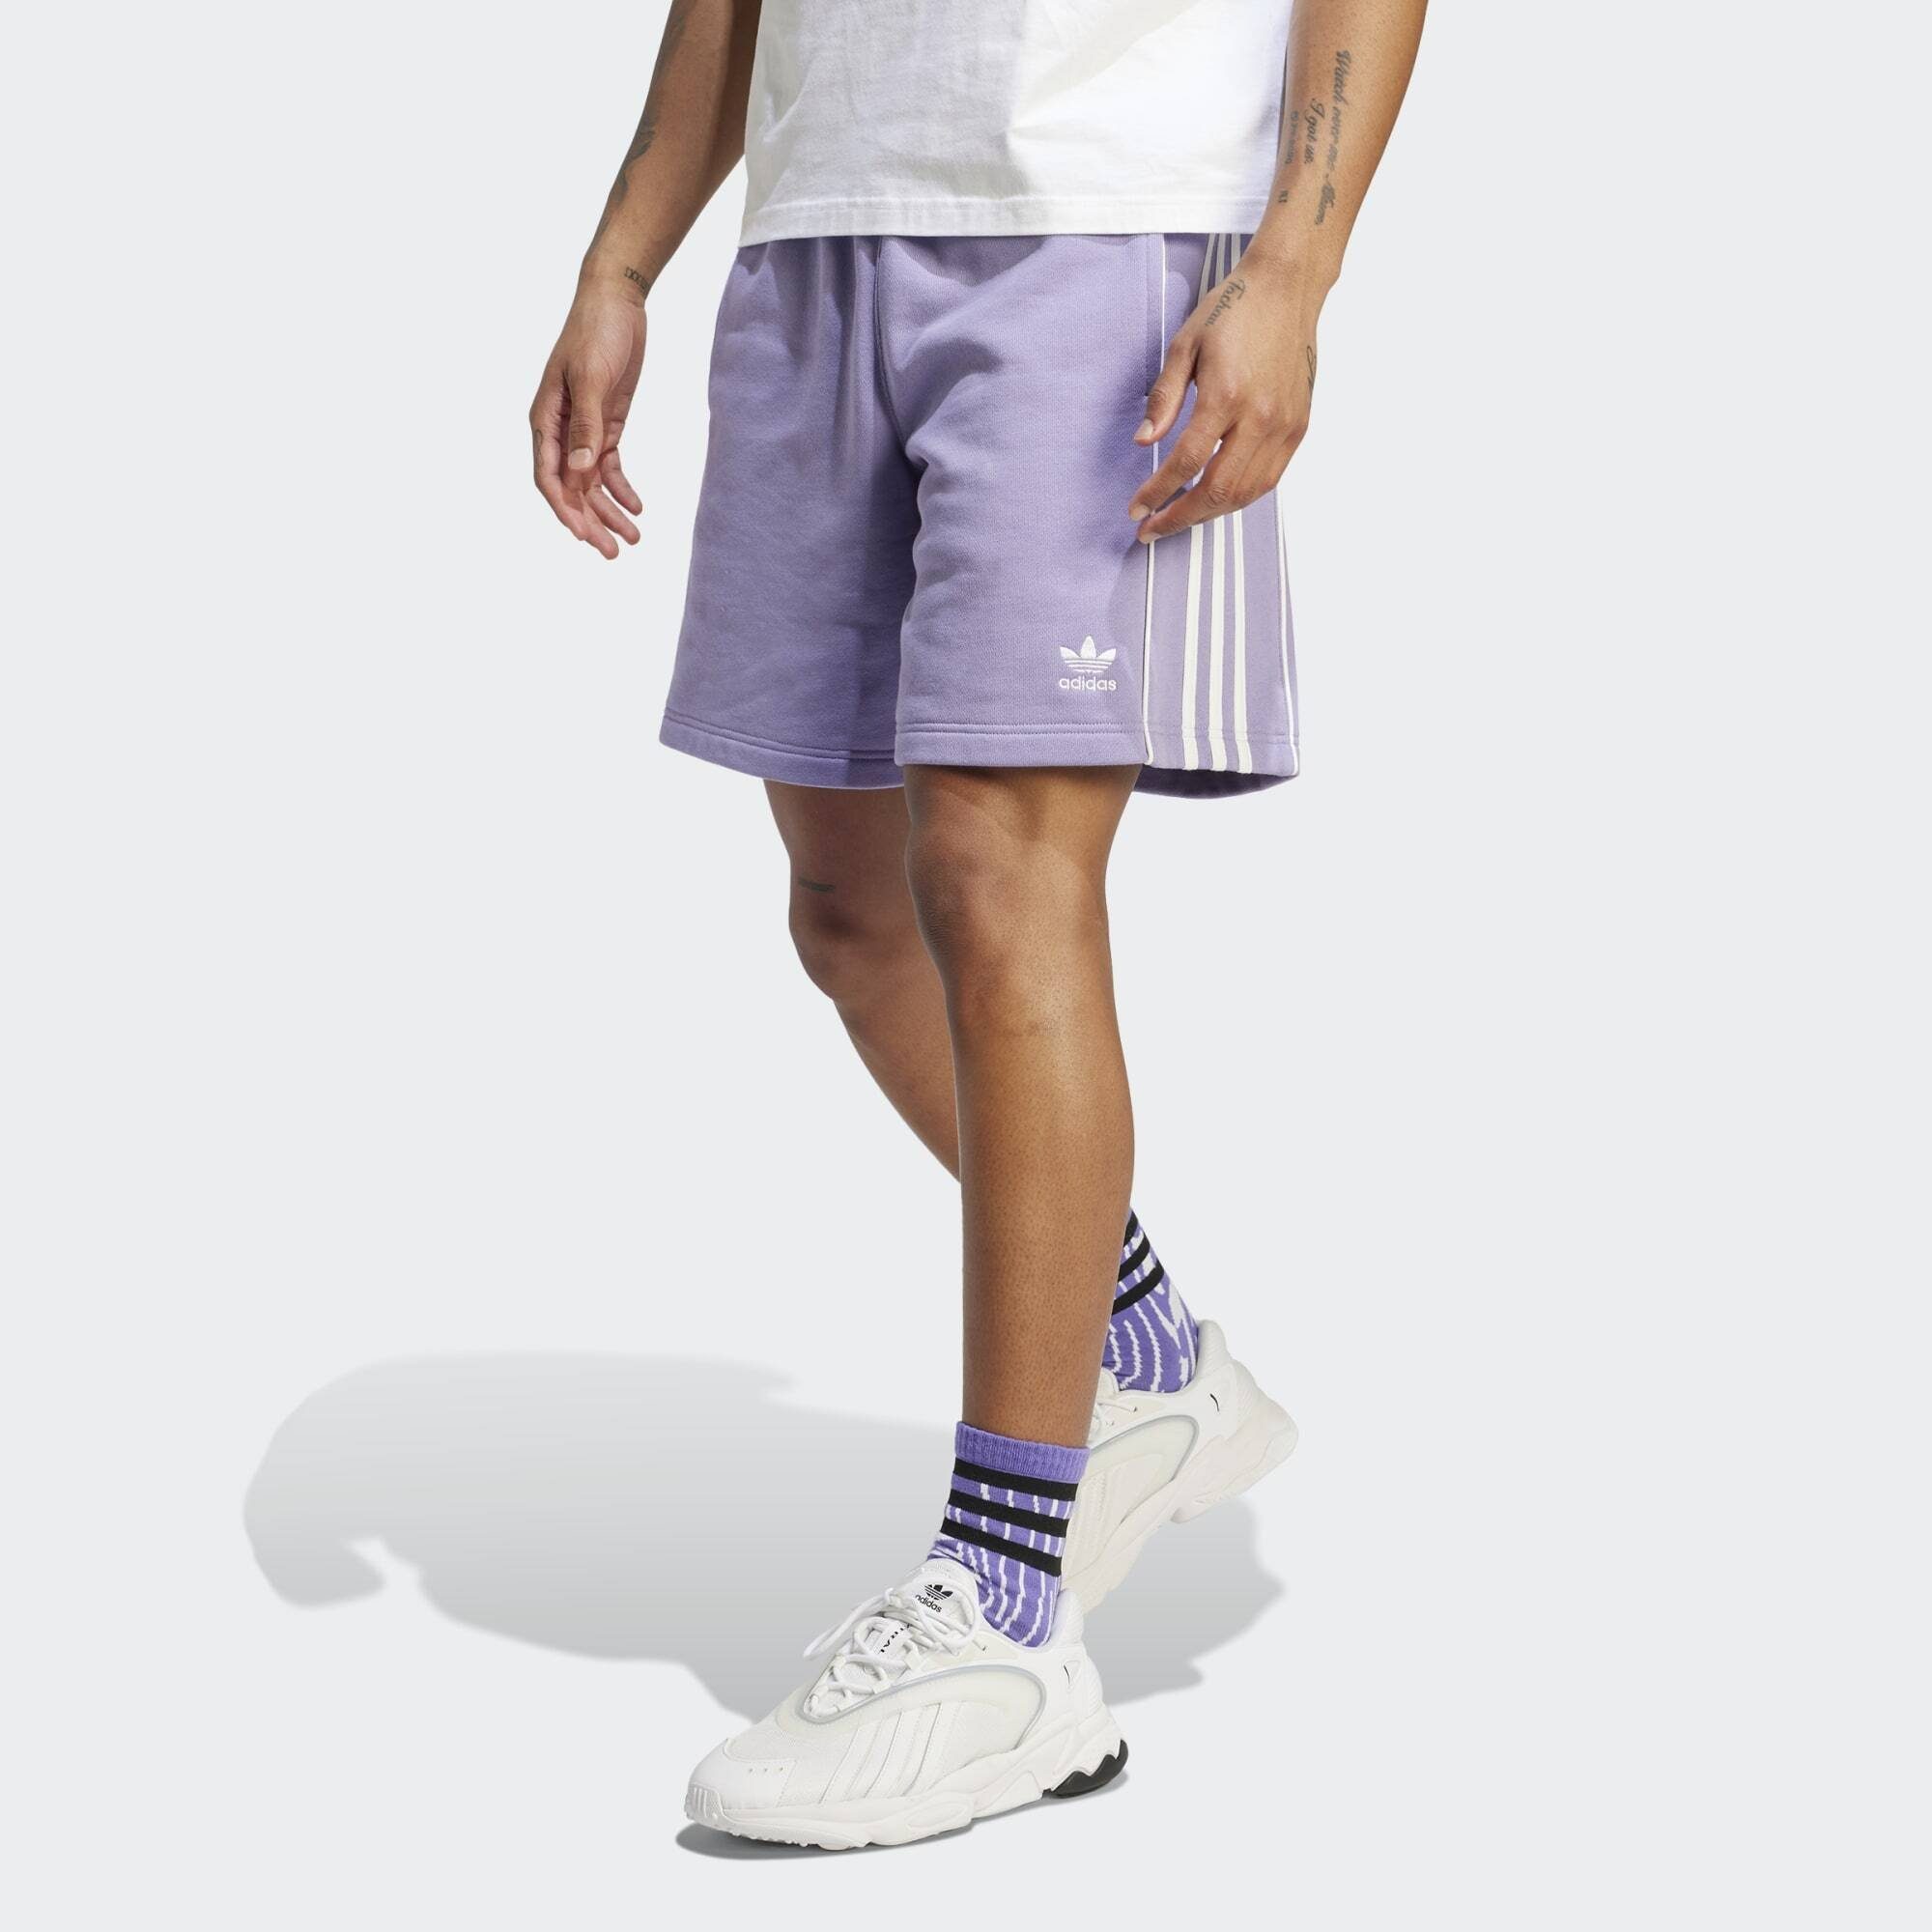 REKIVE Lilac Originals adidas Shorts ADIDAS SHORTS Magic